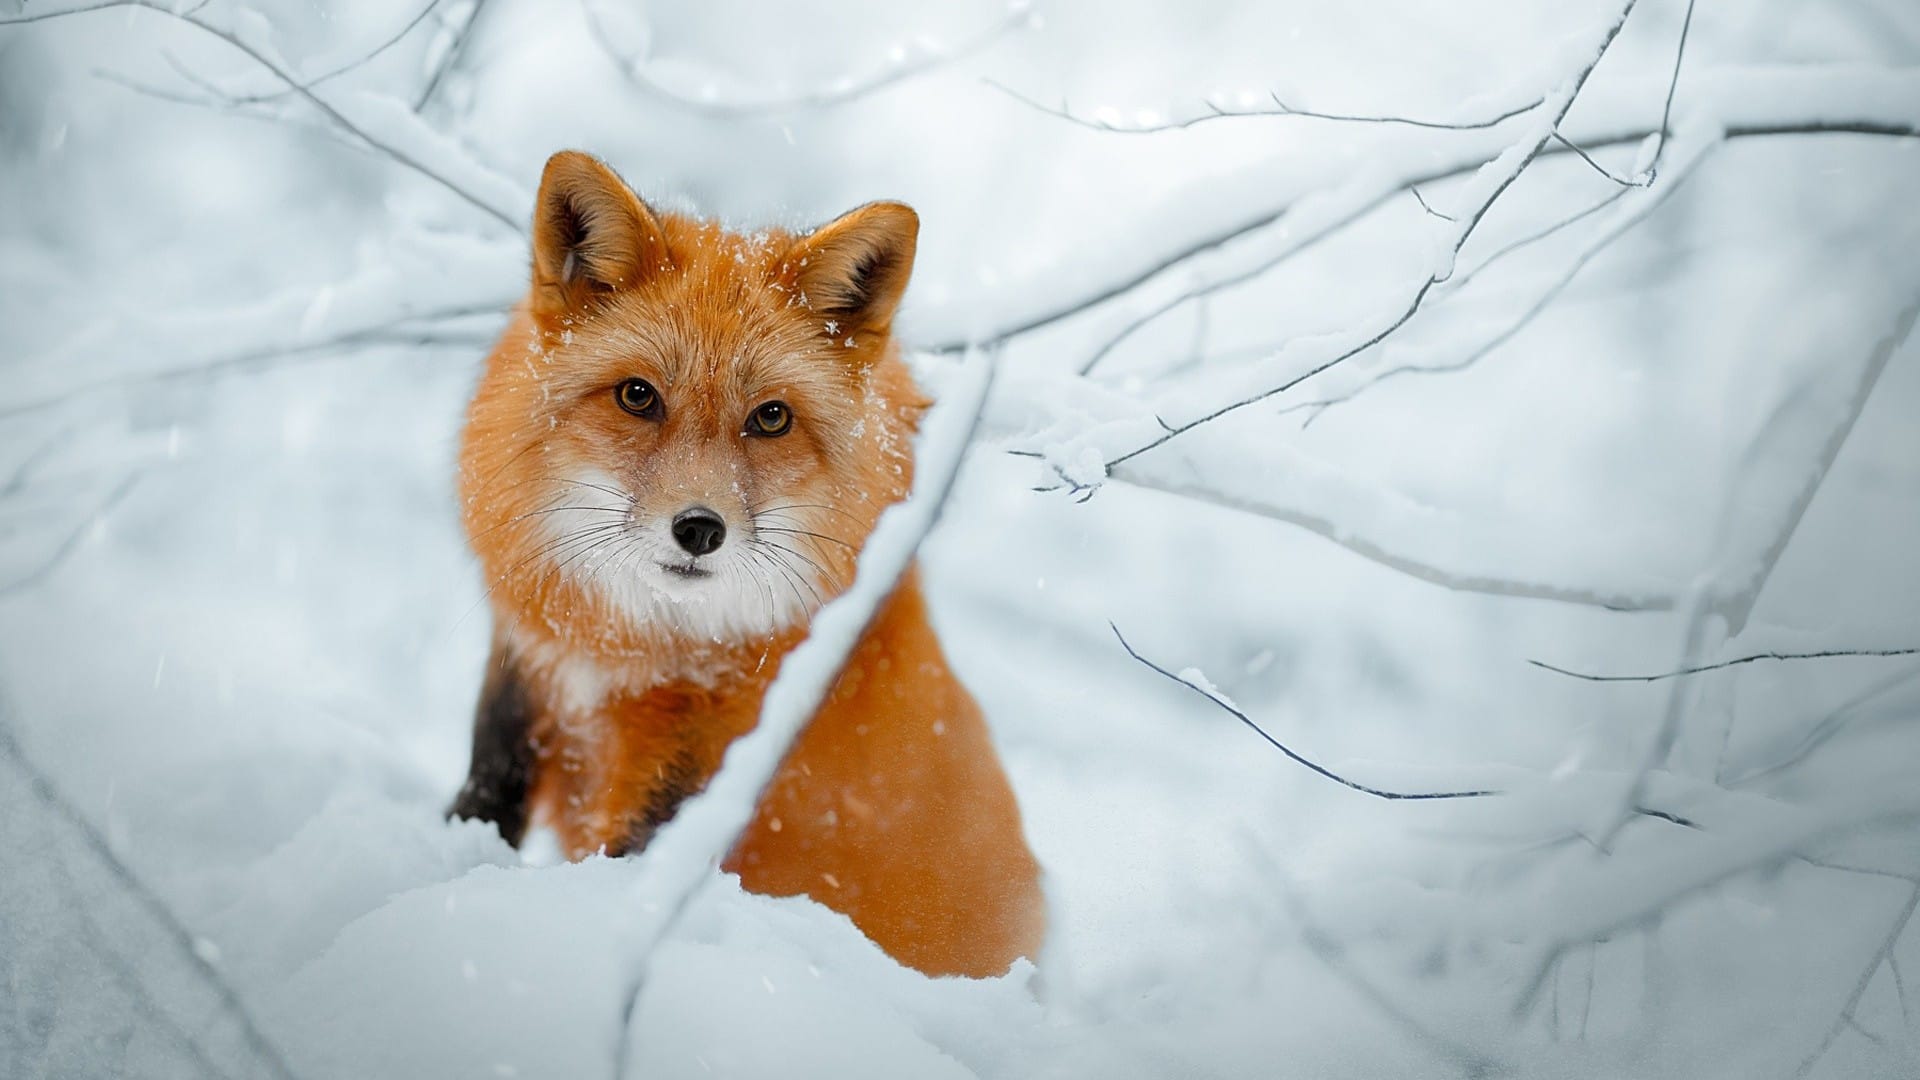 冬天雪地里小狐狸可爱呆萌系列图片壁纸大全